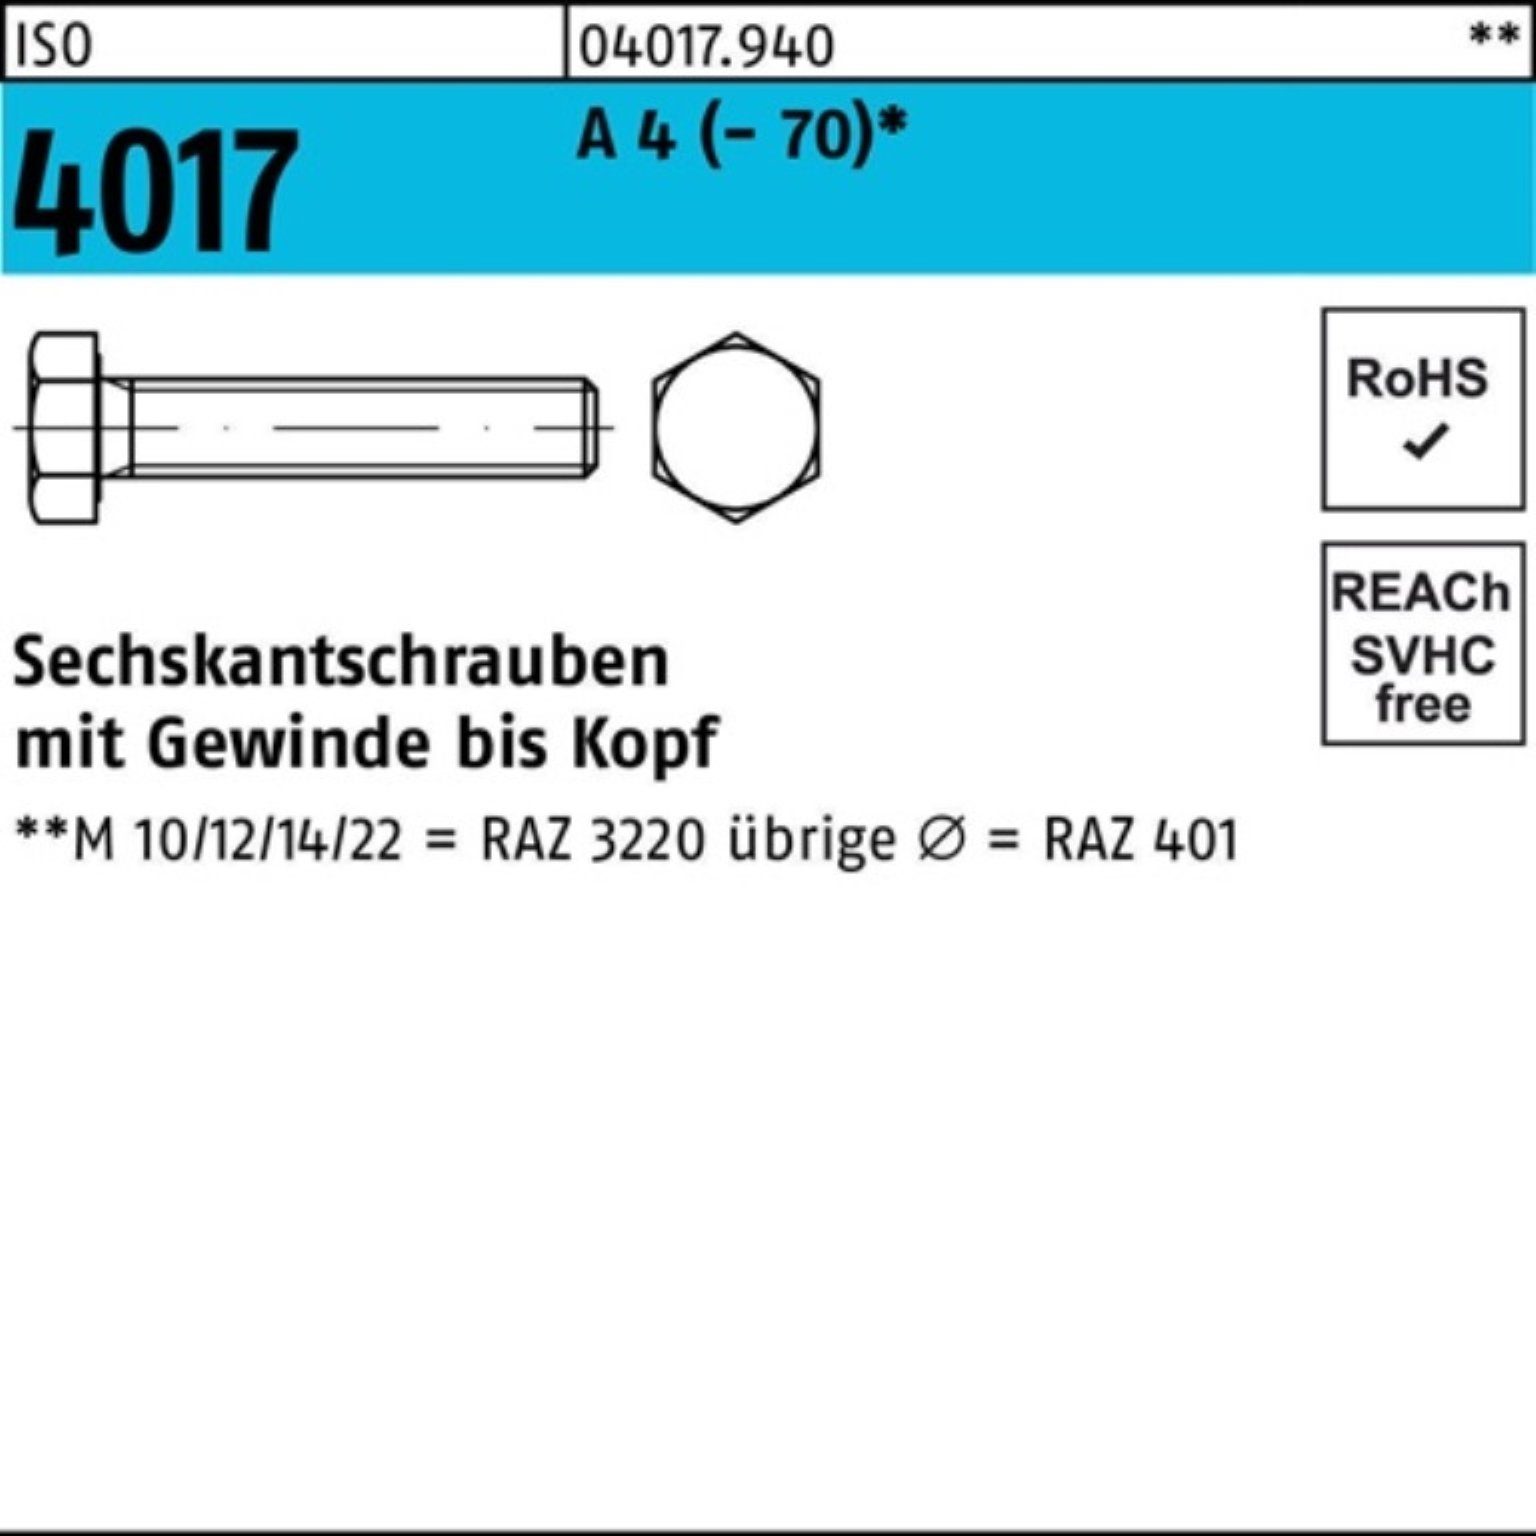 Bufab Sechskantschraube 100er Pack Sechskantschraube ISO 4017 VG M12x 140 A 4 (70) 1 Stück